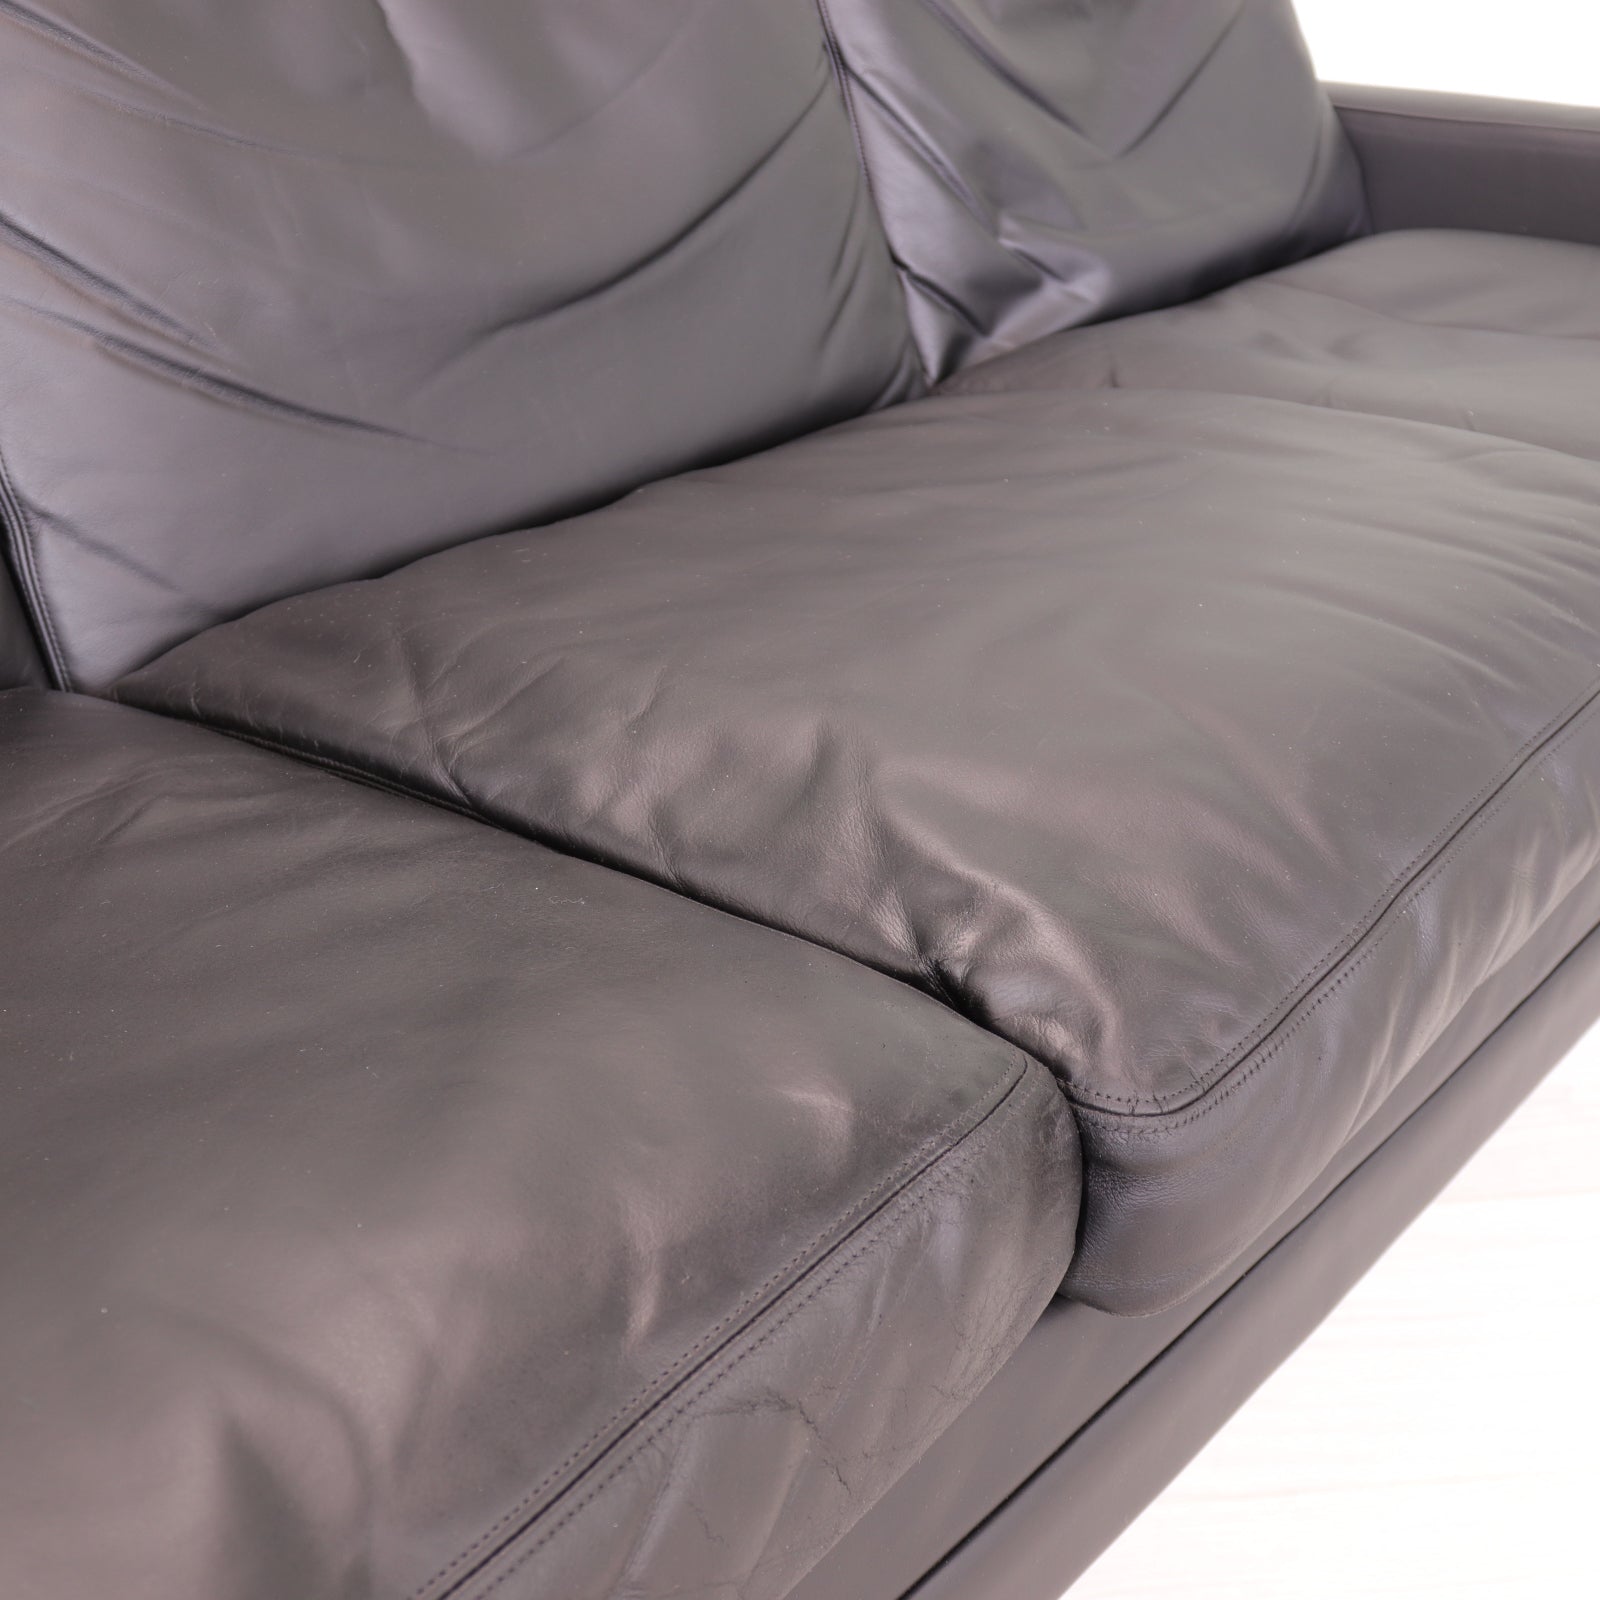 Fredrik Kayser 807 Black Leather Sofa for Vante - teakyfinders